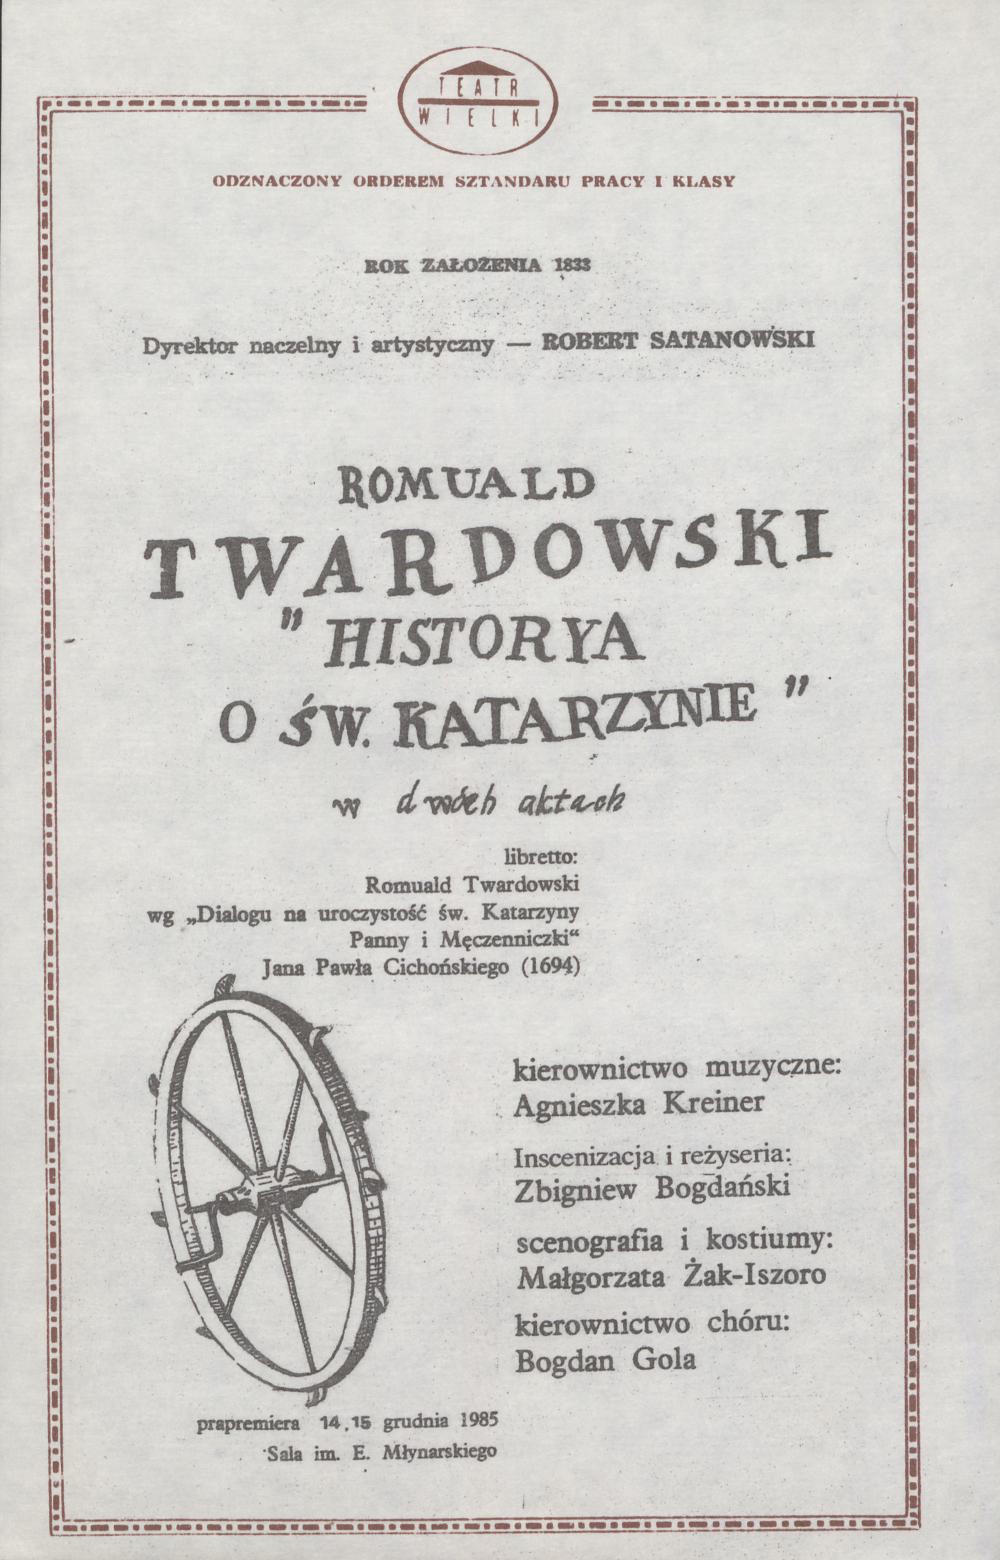 Wkładka obsadowa „Historya o św. Katarzynie” Romuald Twardowski 27-09-1987